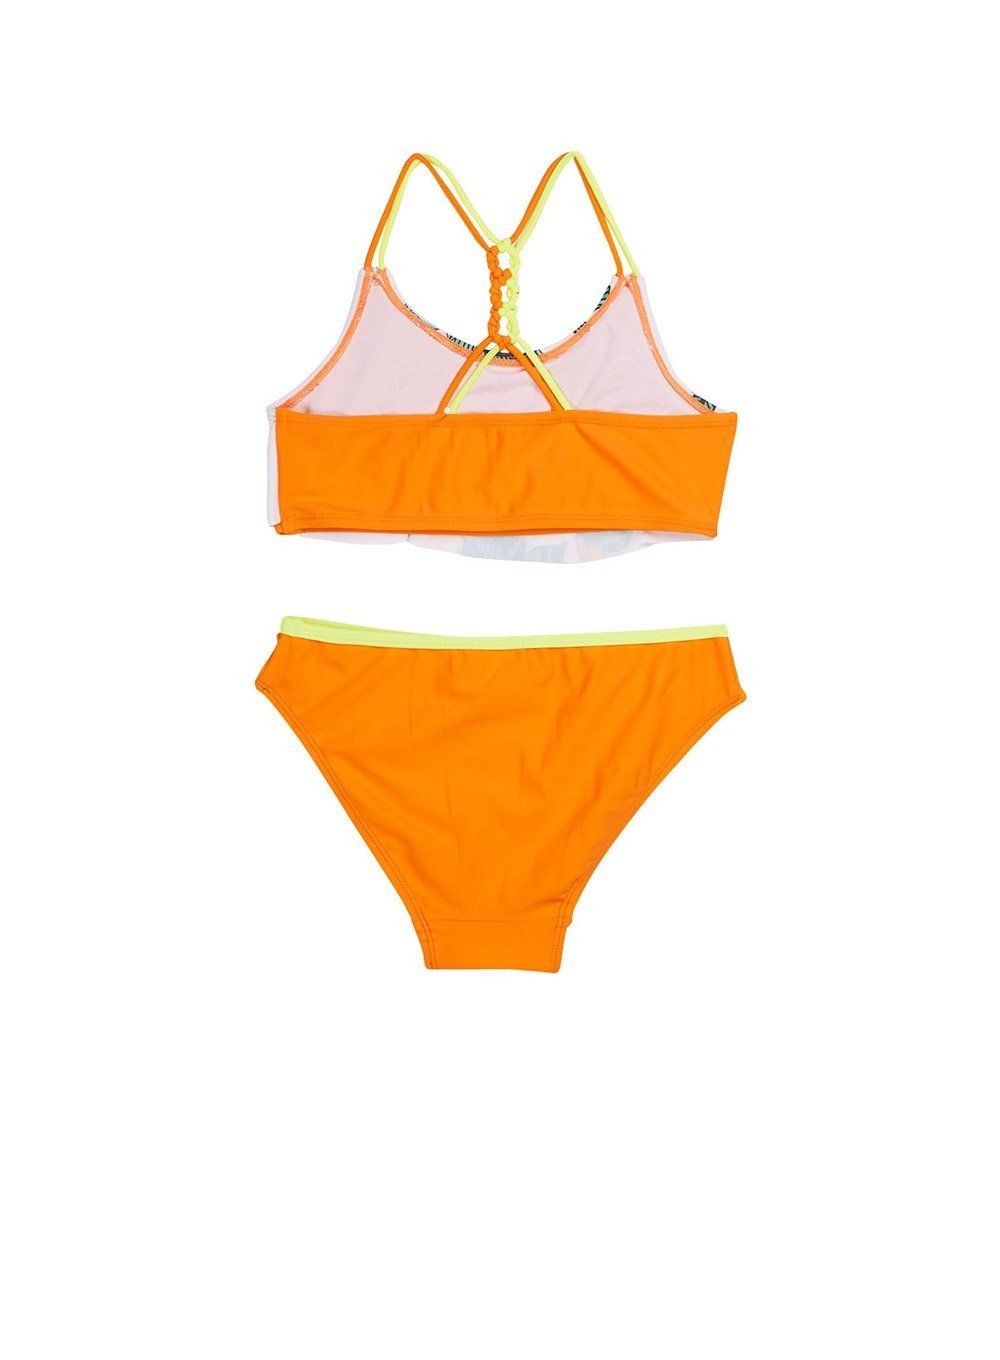 Centurion reccomend Girls in orange and white bikini